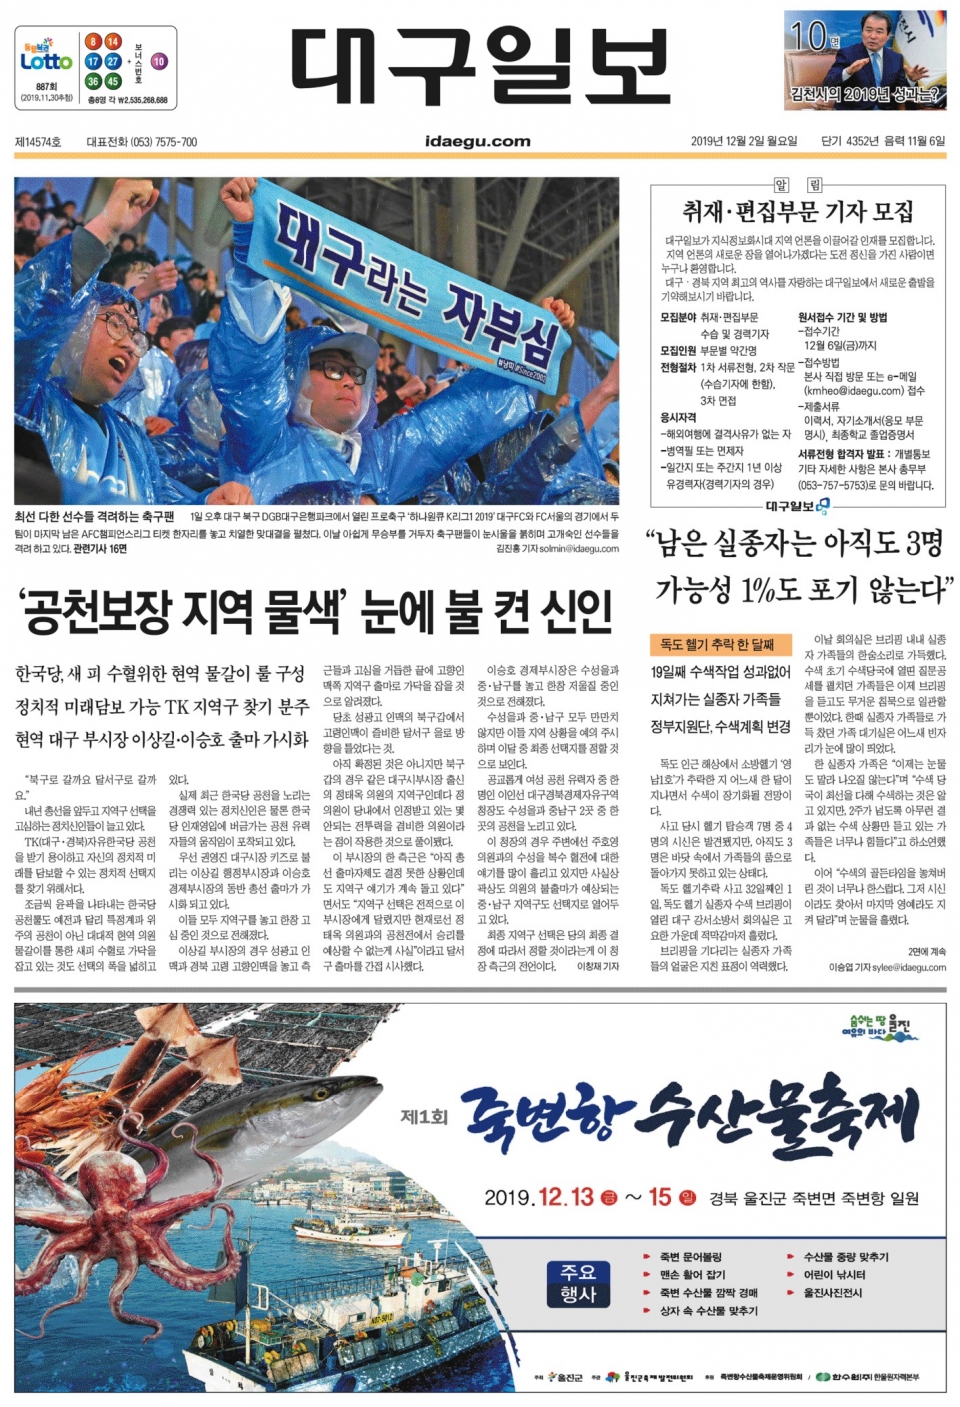 대구일보 12월 2일자 1면.